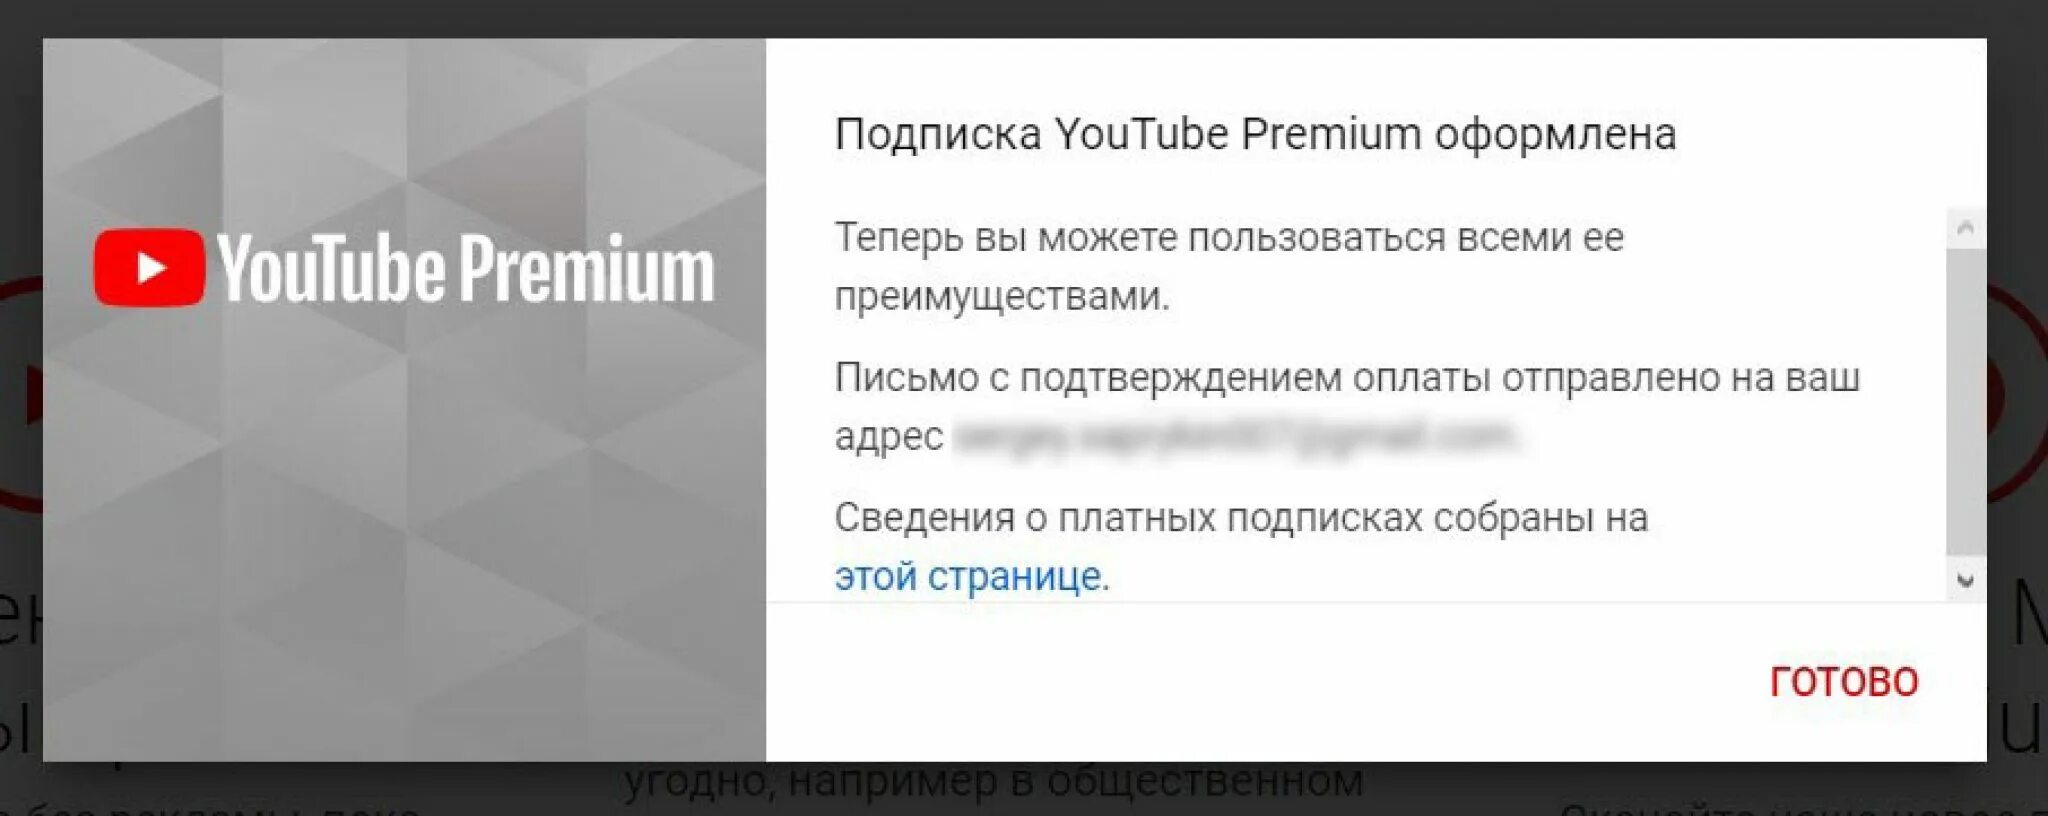 Подписка youtube Premium. Платная подписка на youtube. Платная подписка ютуб. Ютуб премиум оформлена.